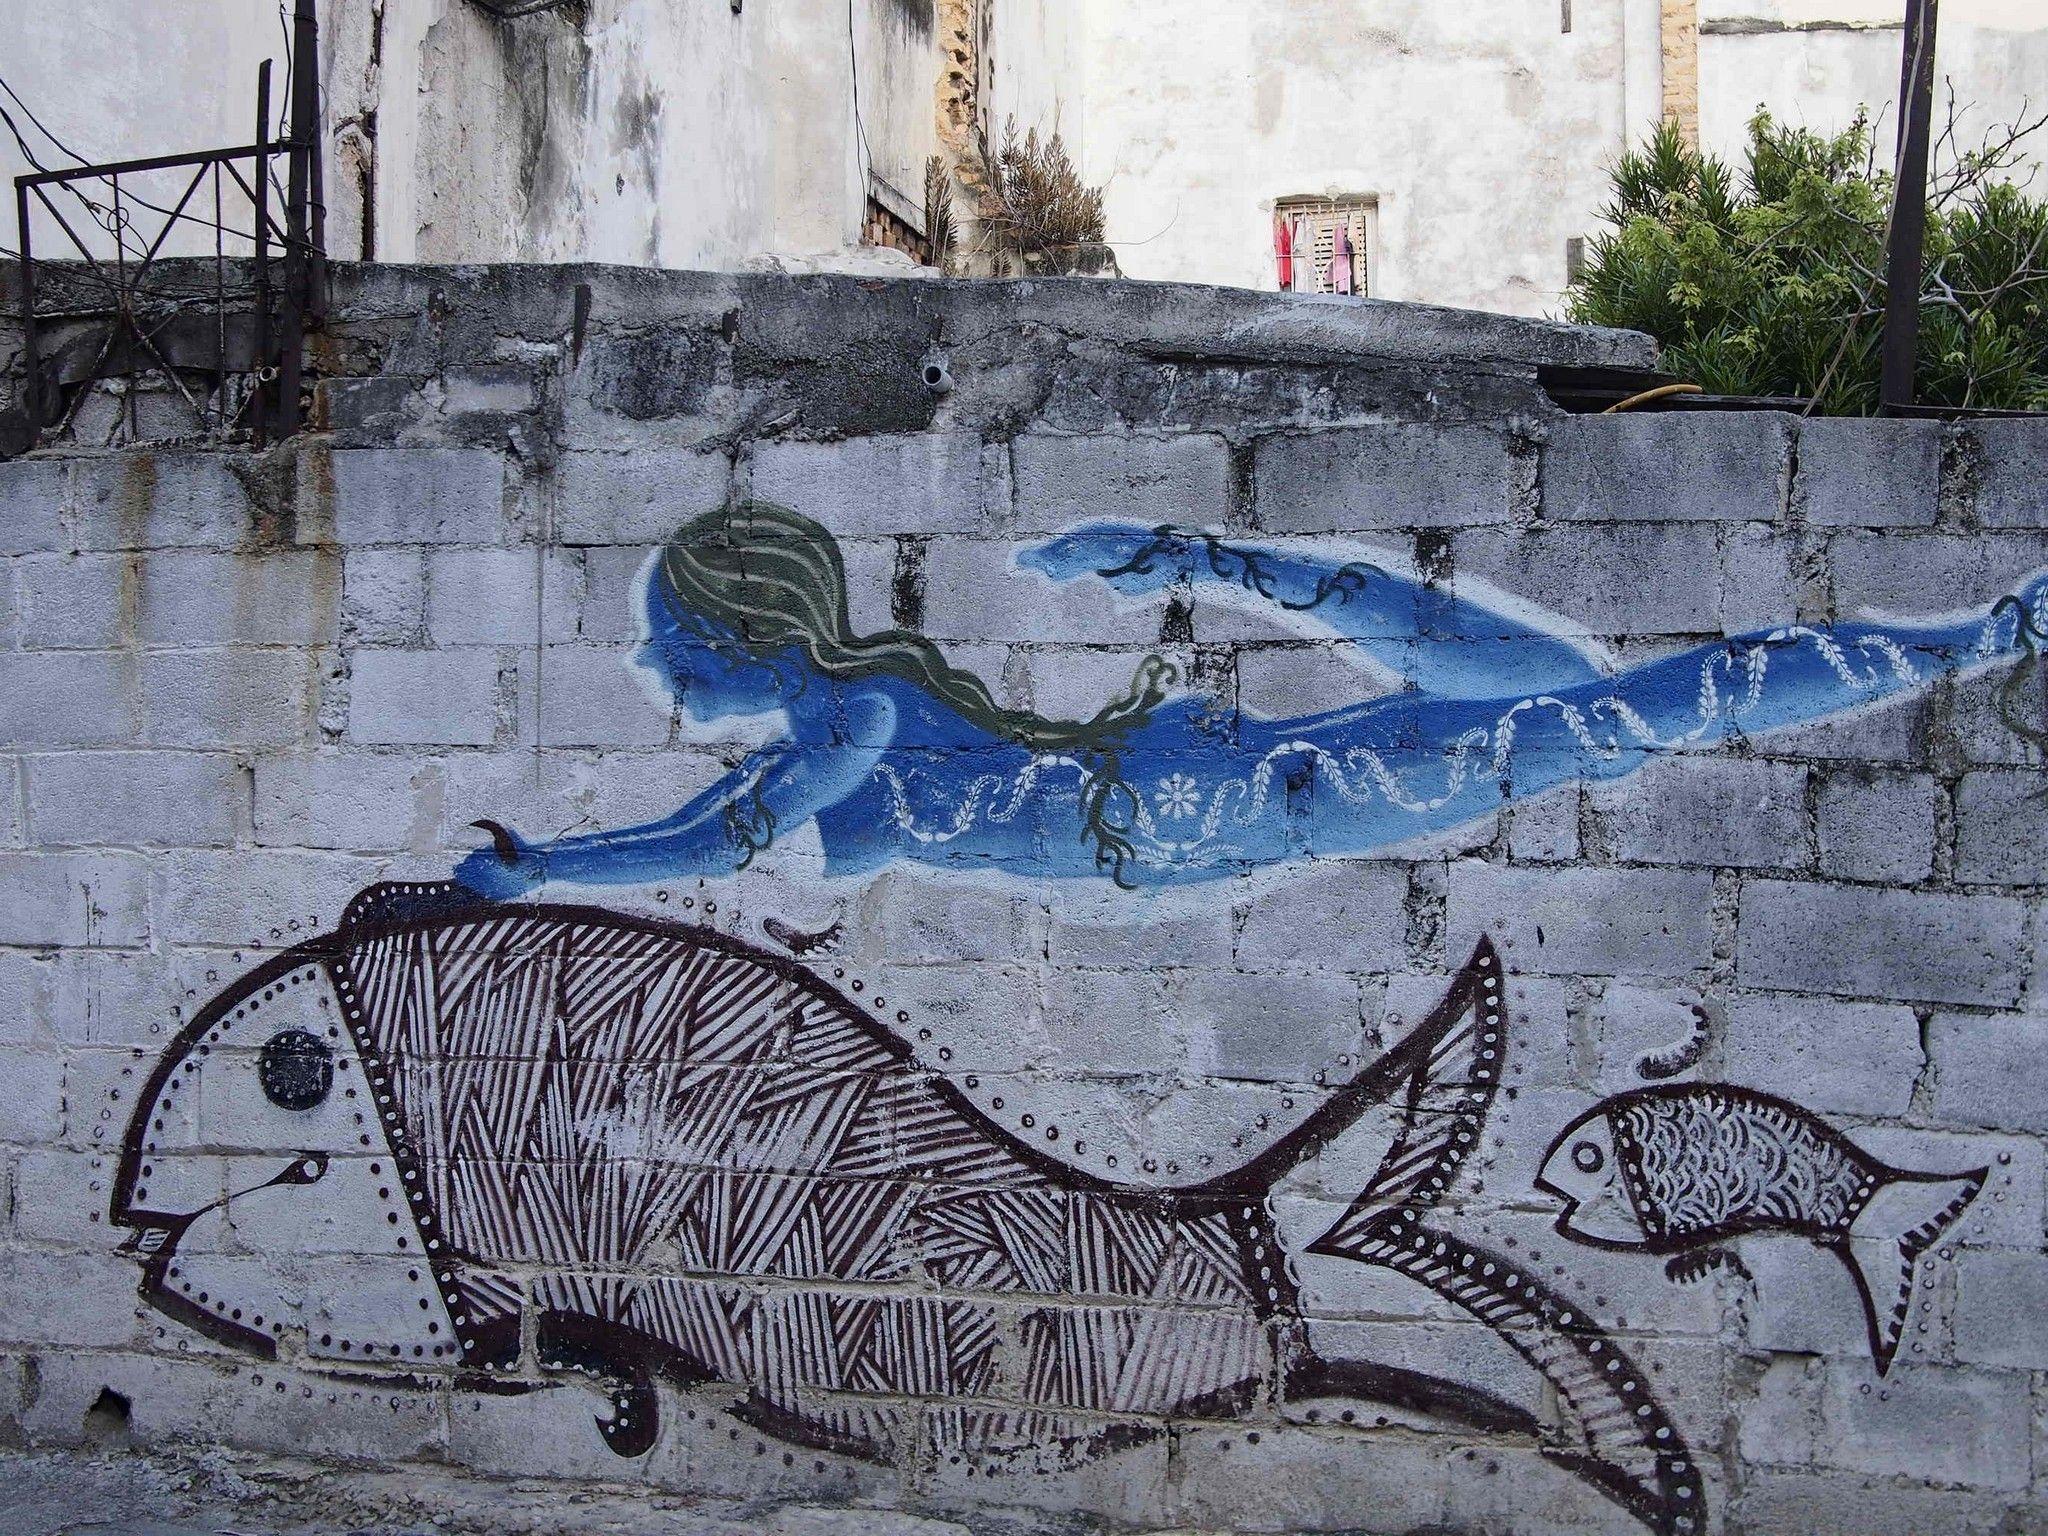 Graffiti subversiv despre libertate în Havana veche